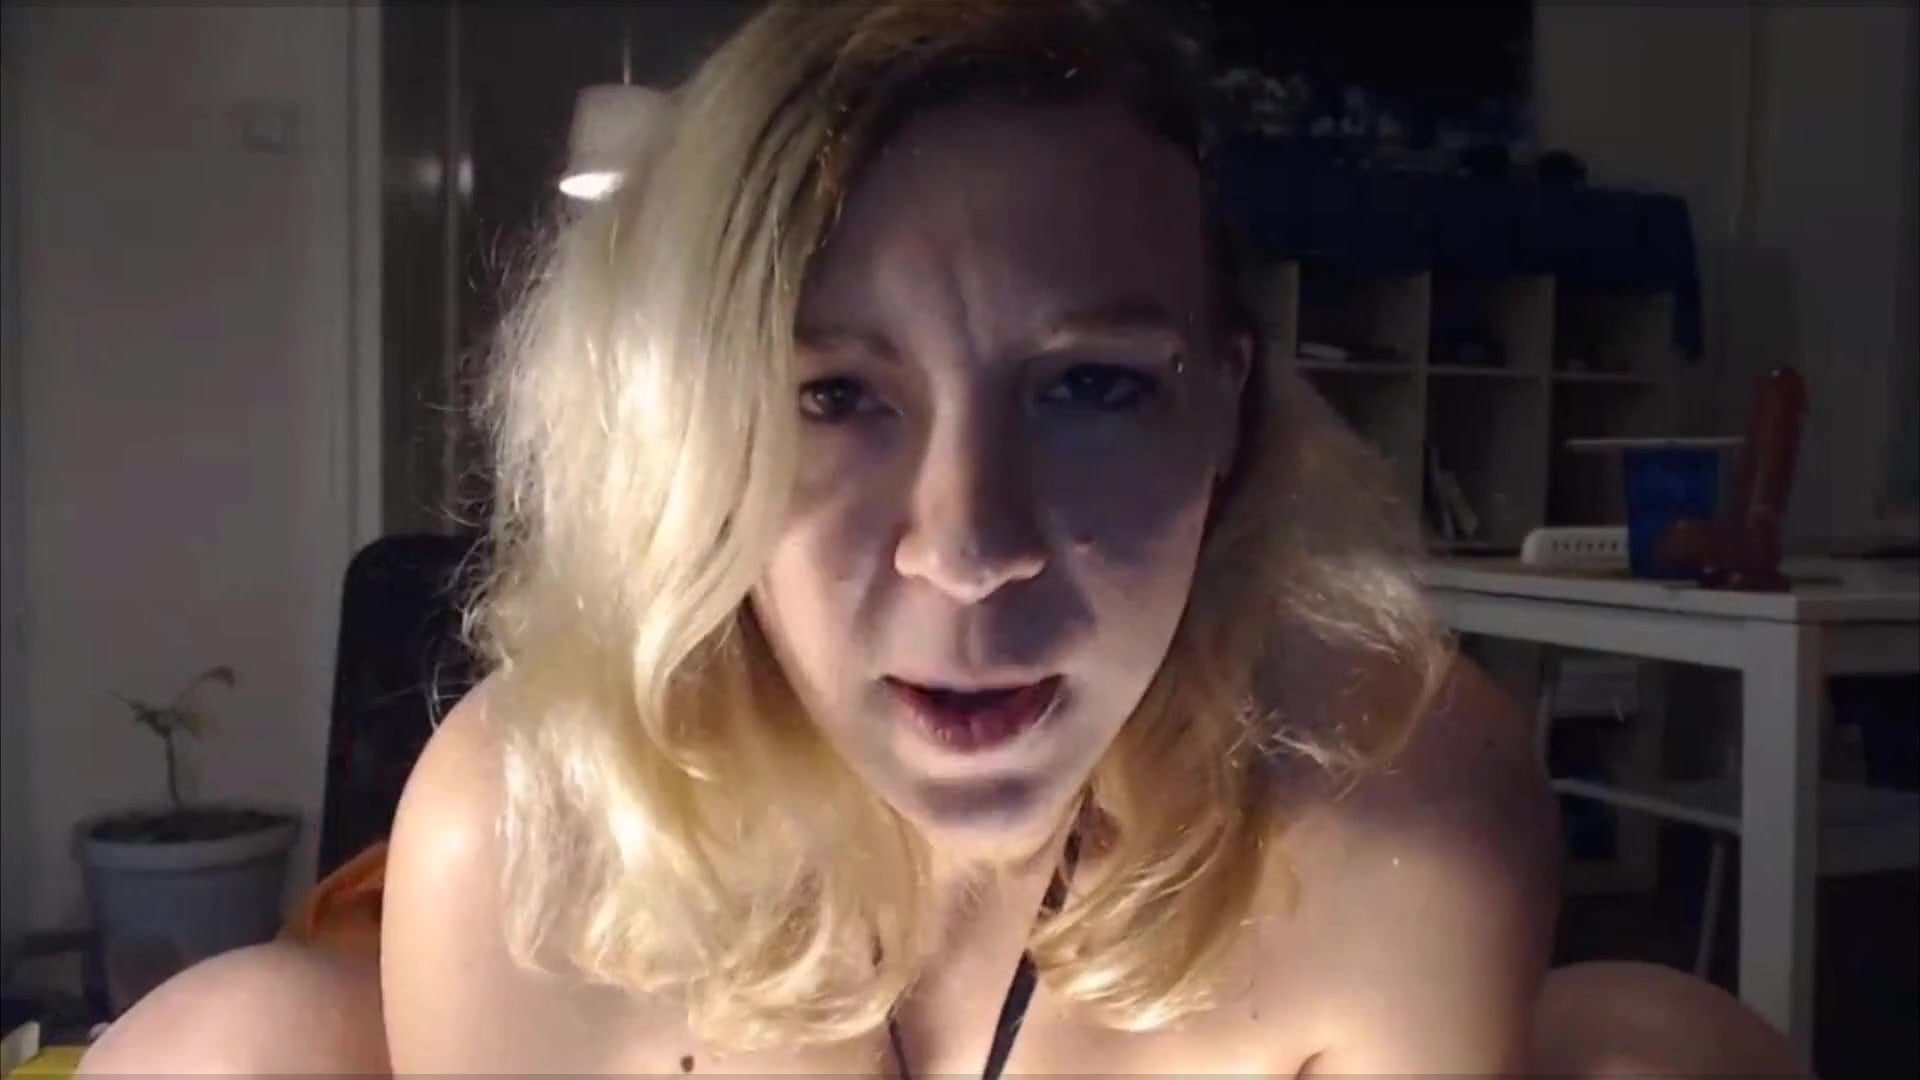 Slutty Blonde Gives Best Jerk off Instruction Ever: Porn 0d xHamster.